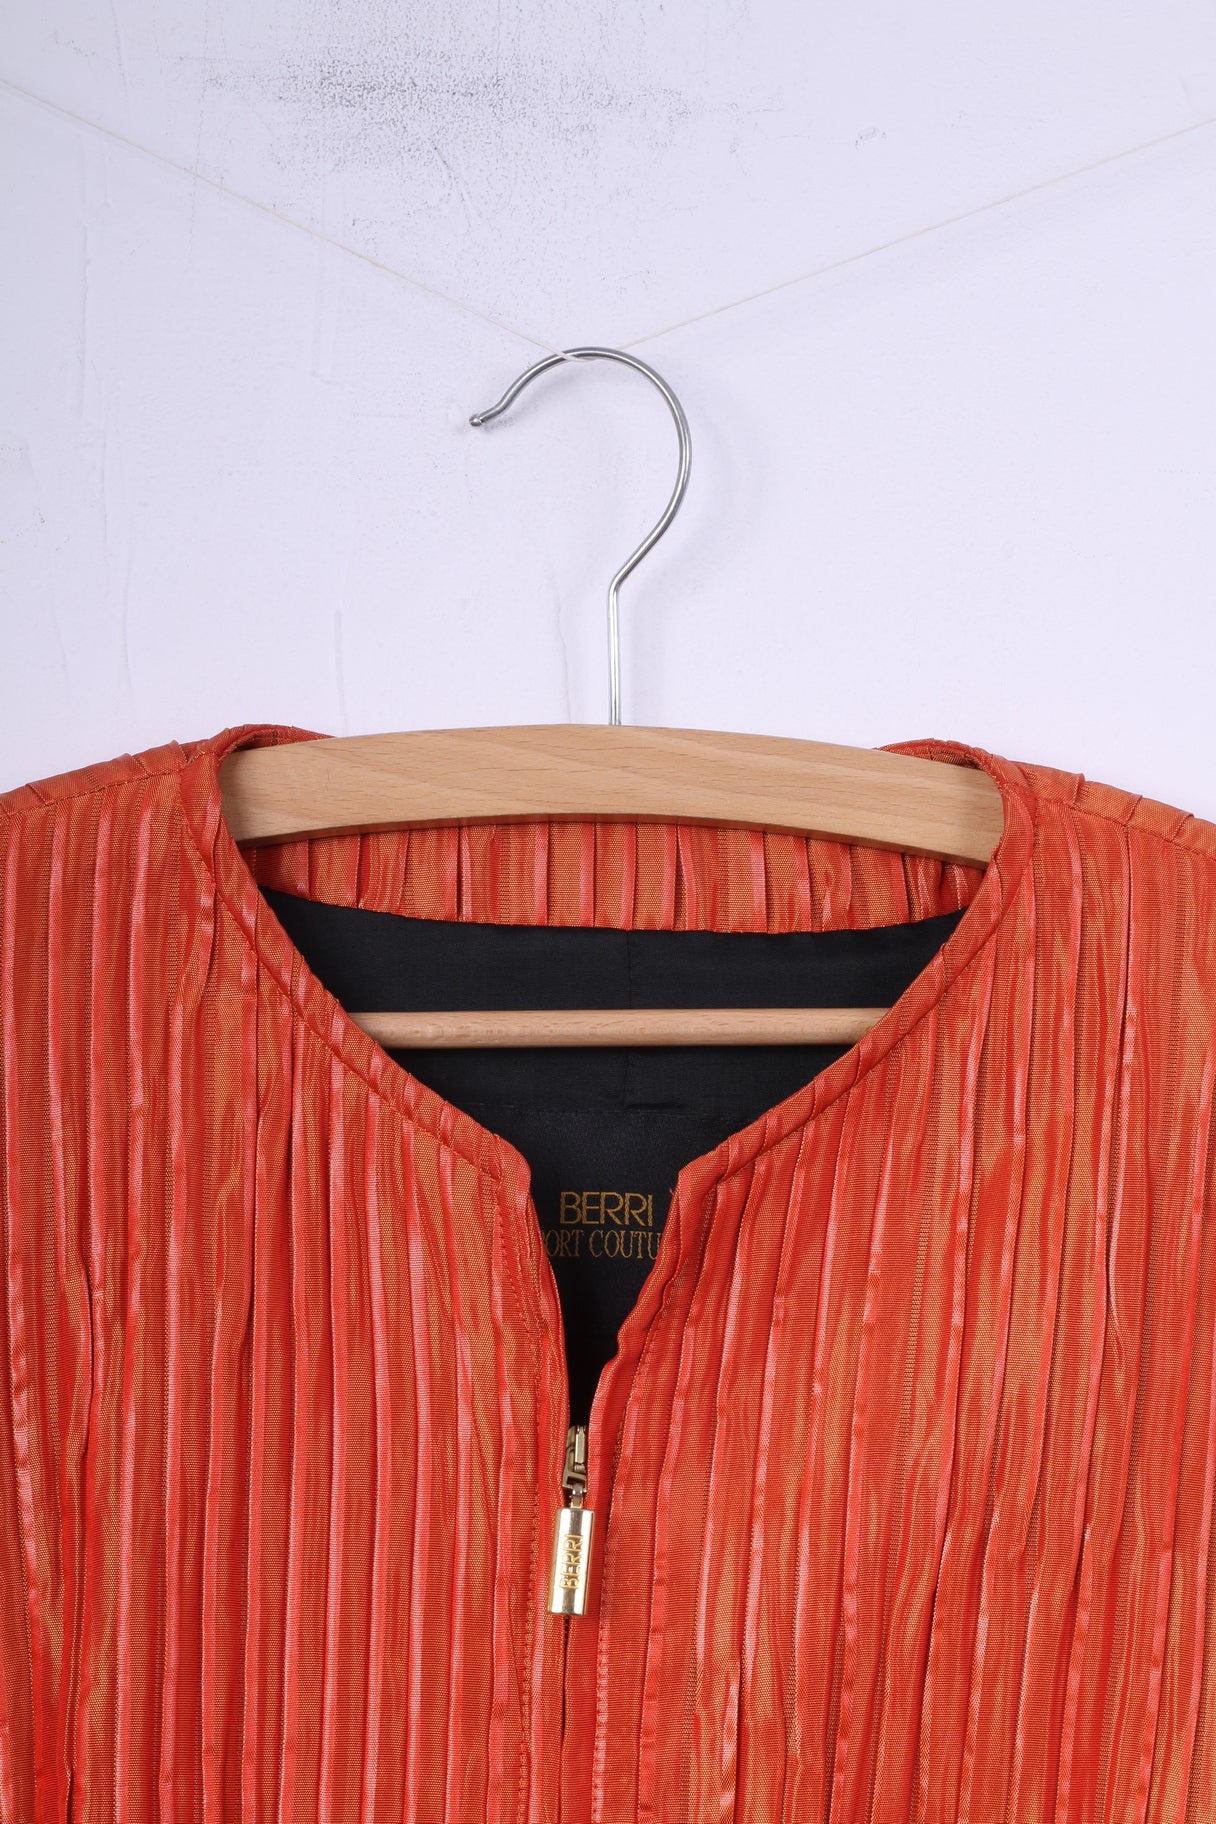 Berri Sport Couture Womens 40 M Blazer Orange Full Zipper Top Jacket